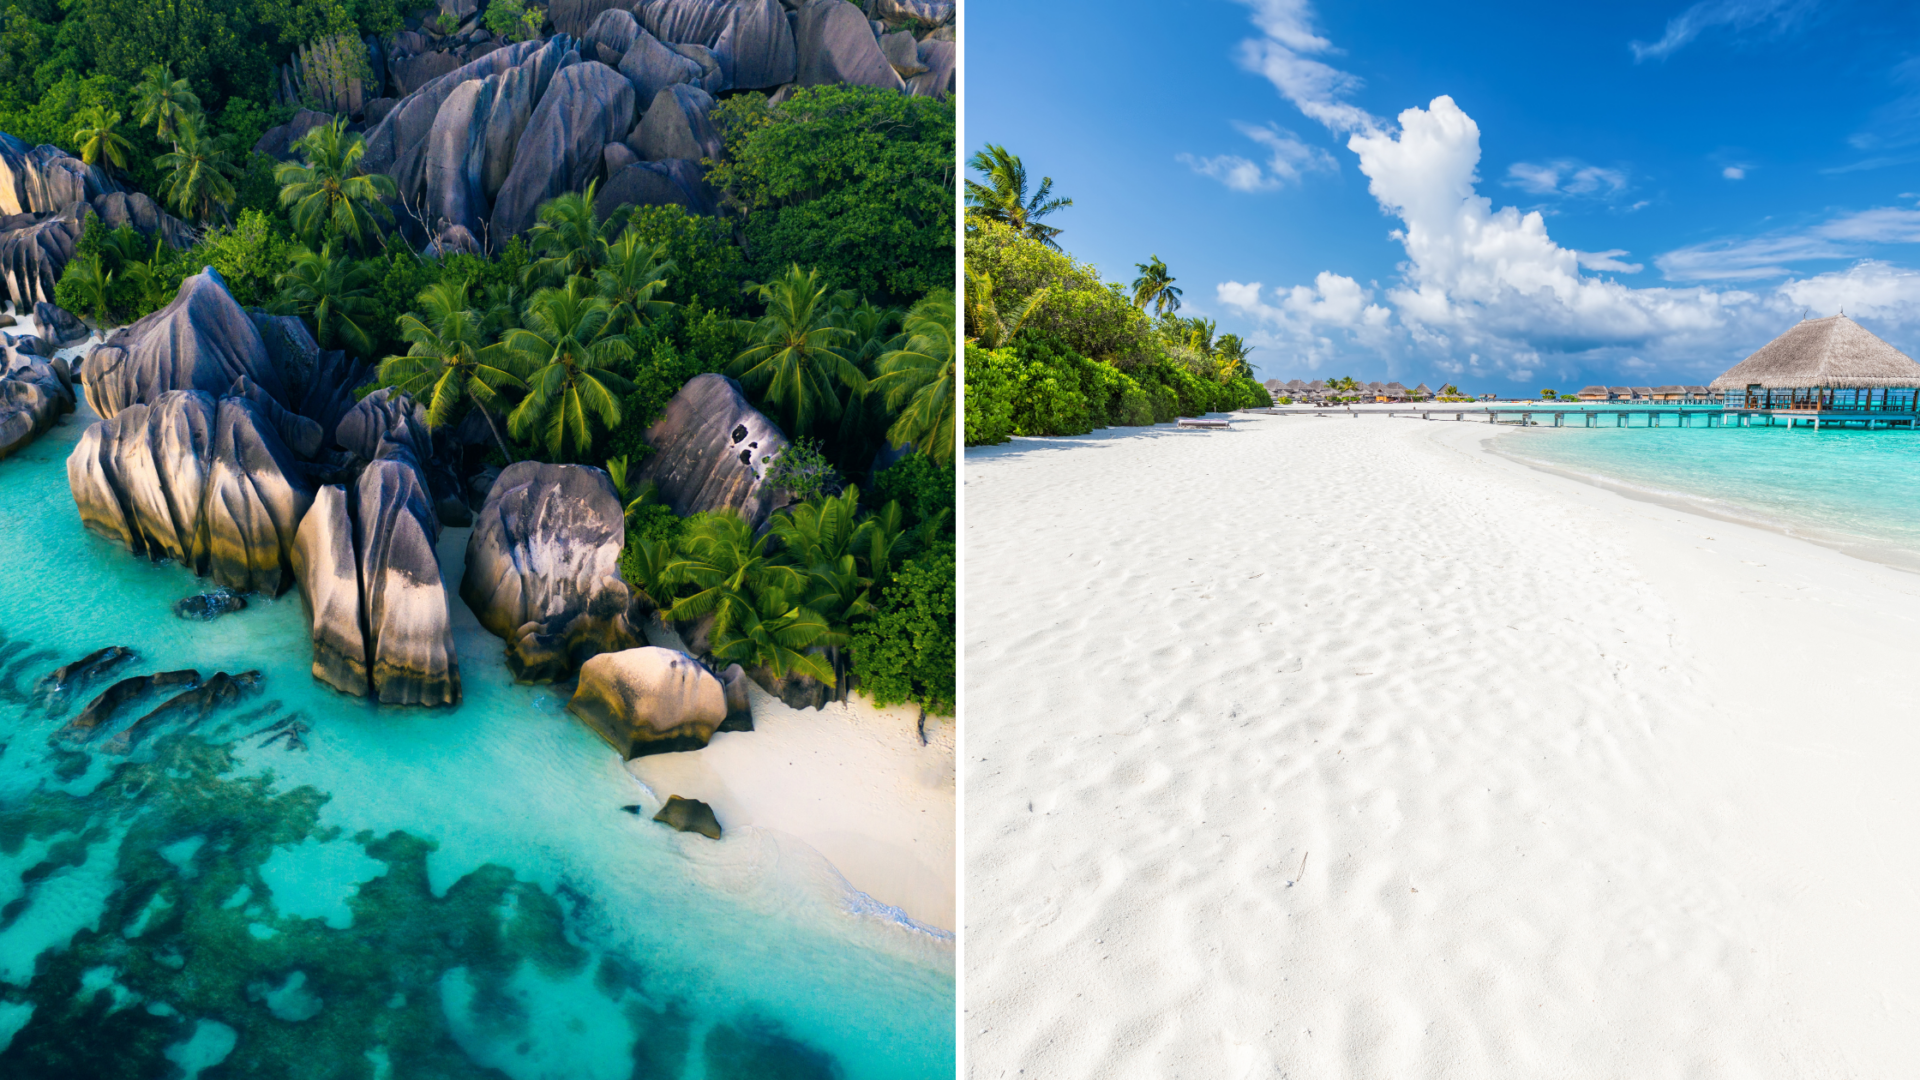 Seychelles ou Maldives